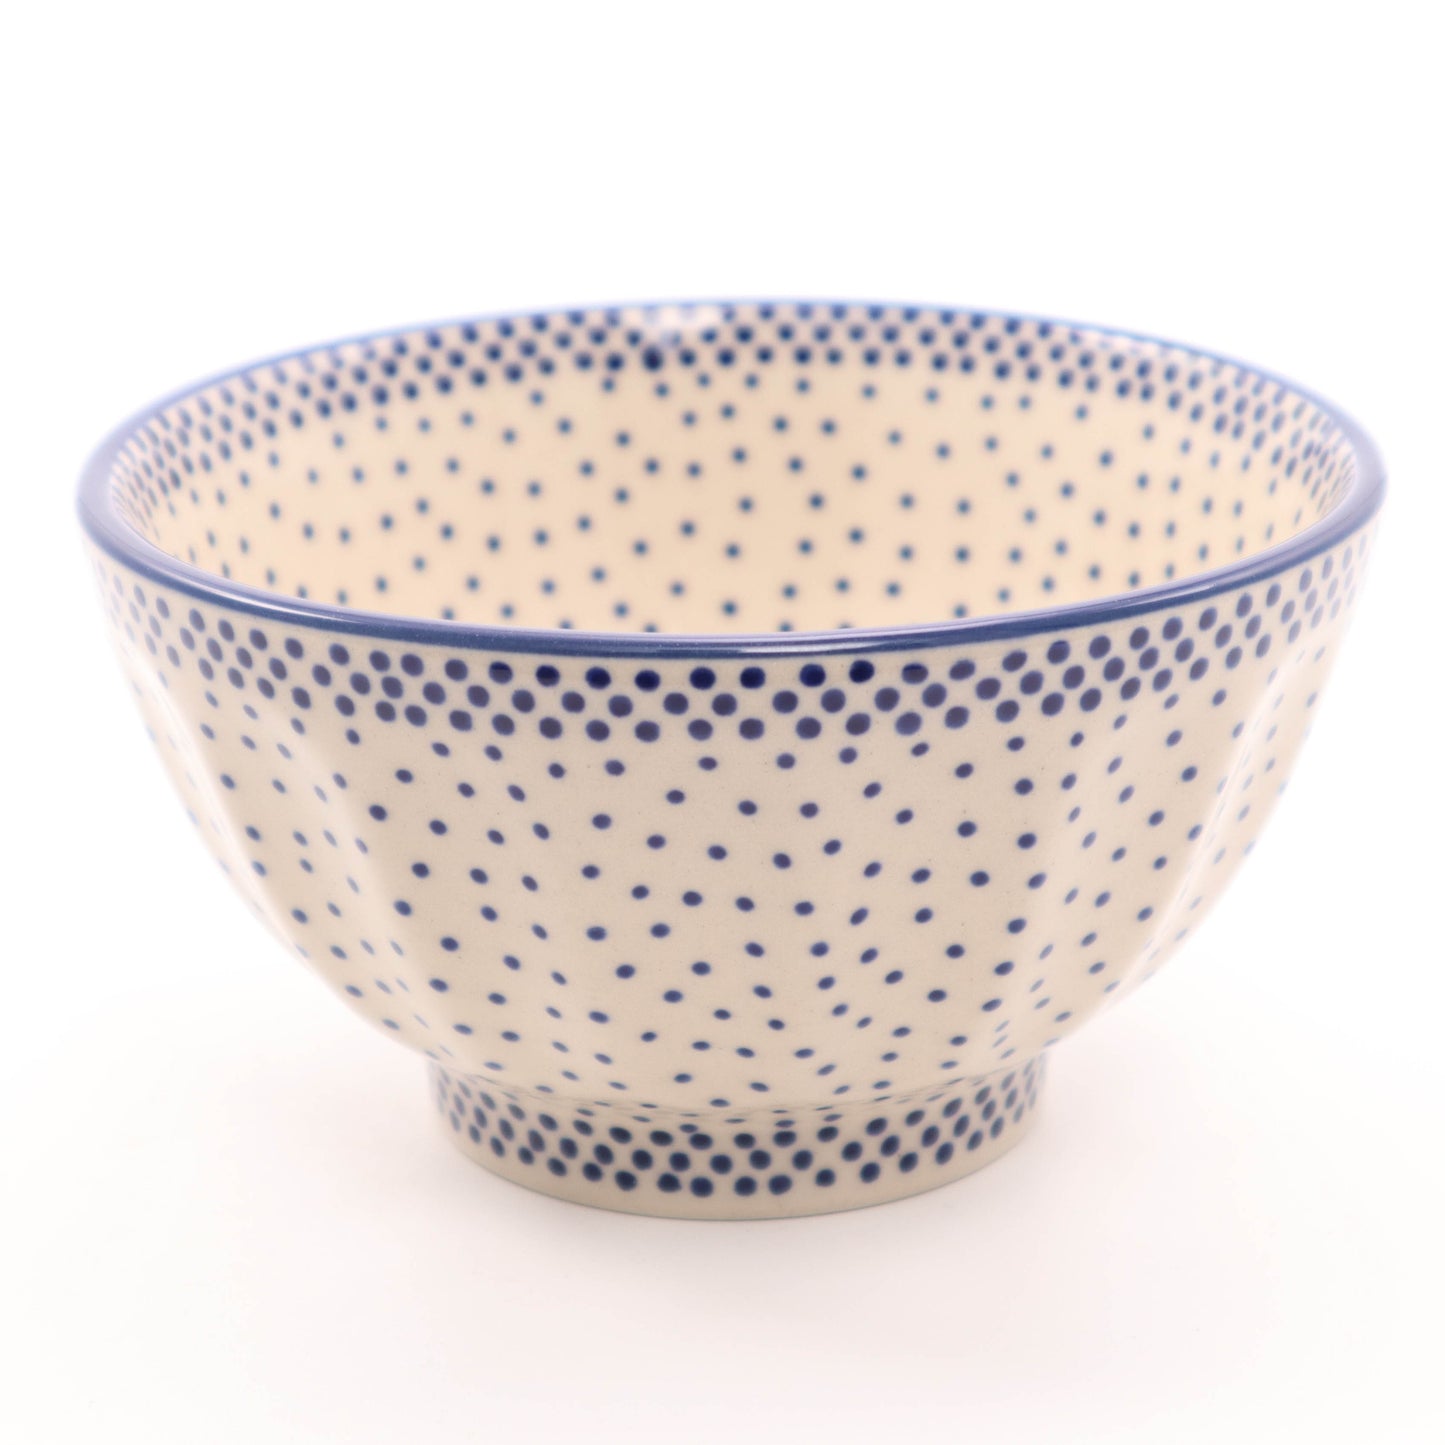 5" Fluted Bowl.  Pattern: Elegant Dots